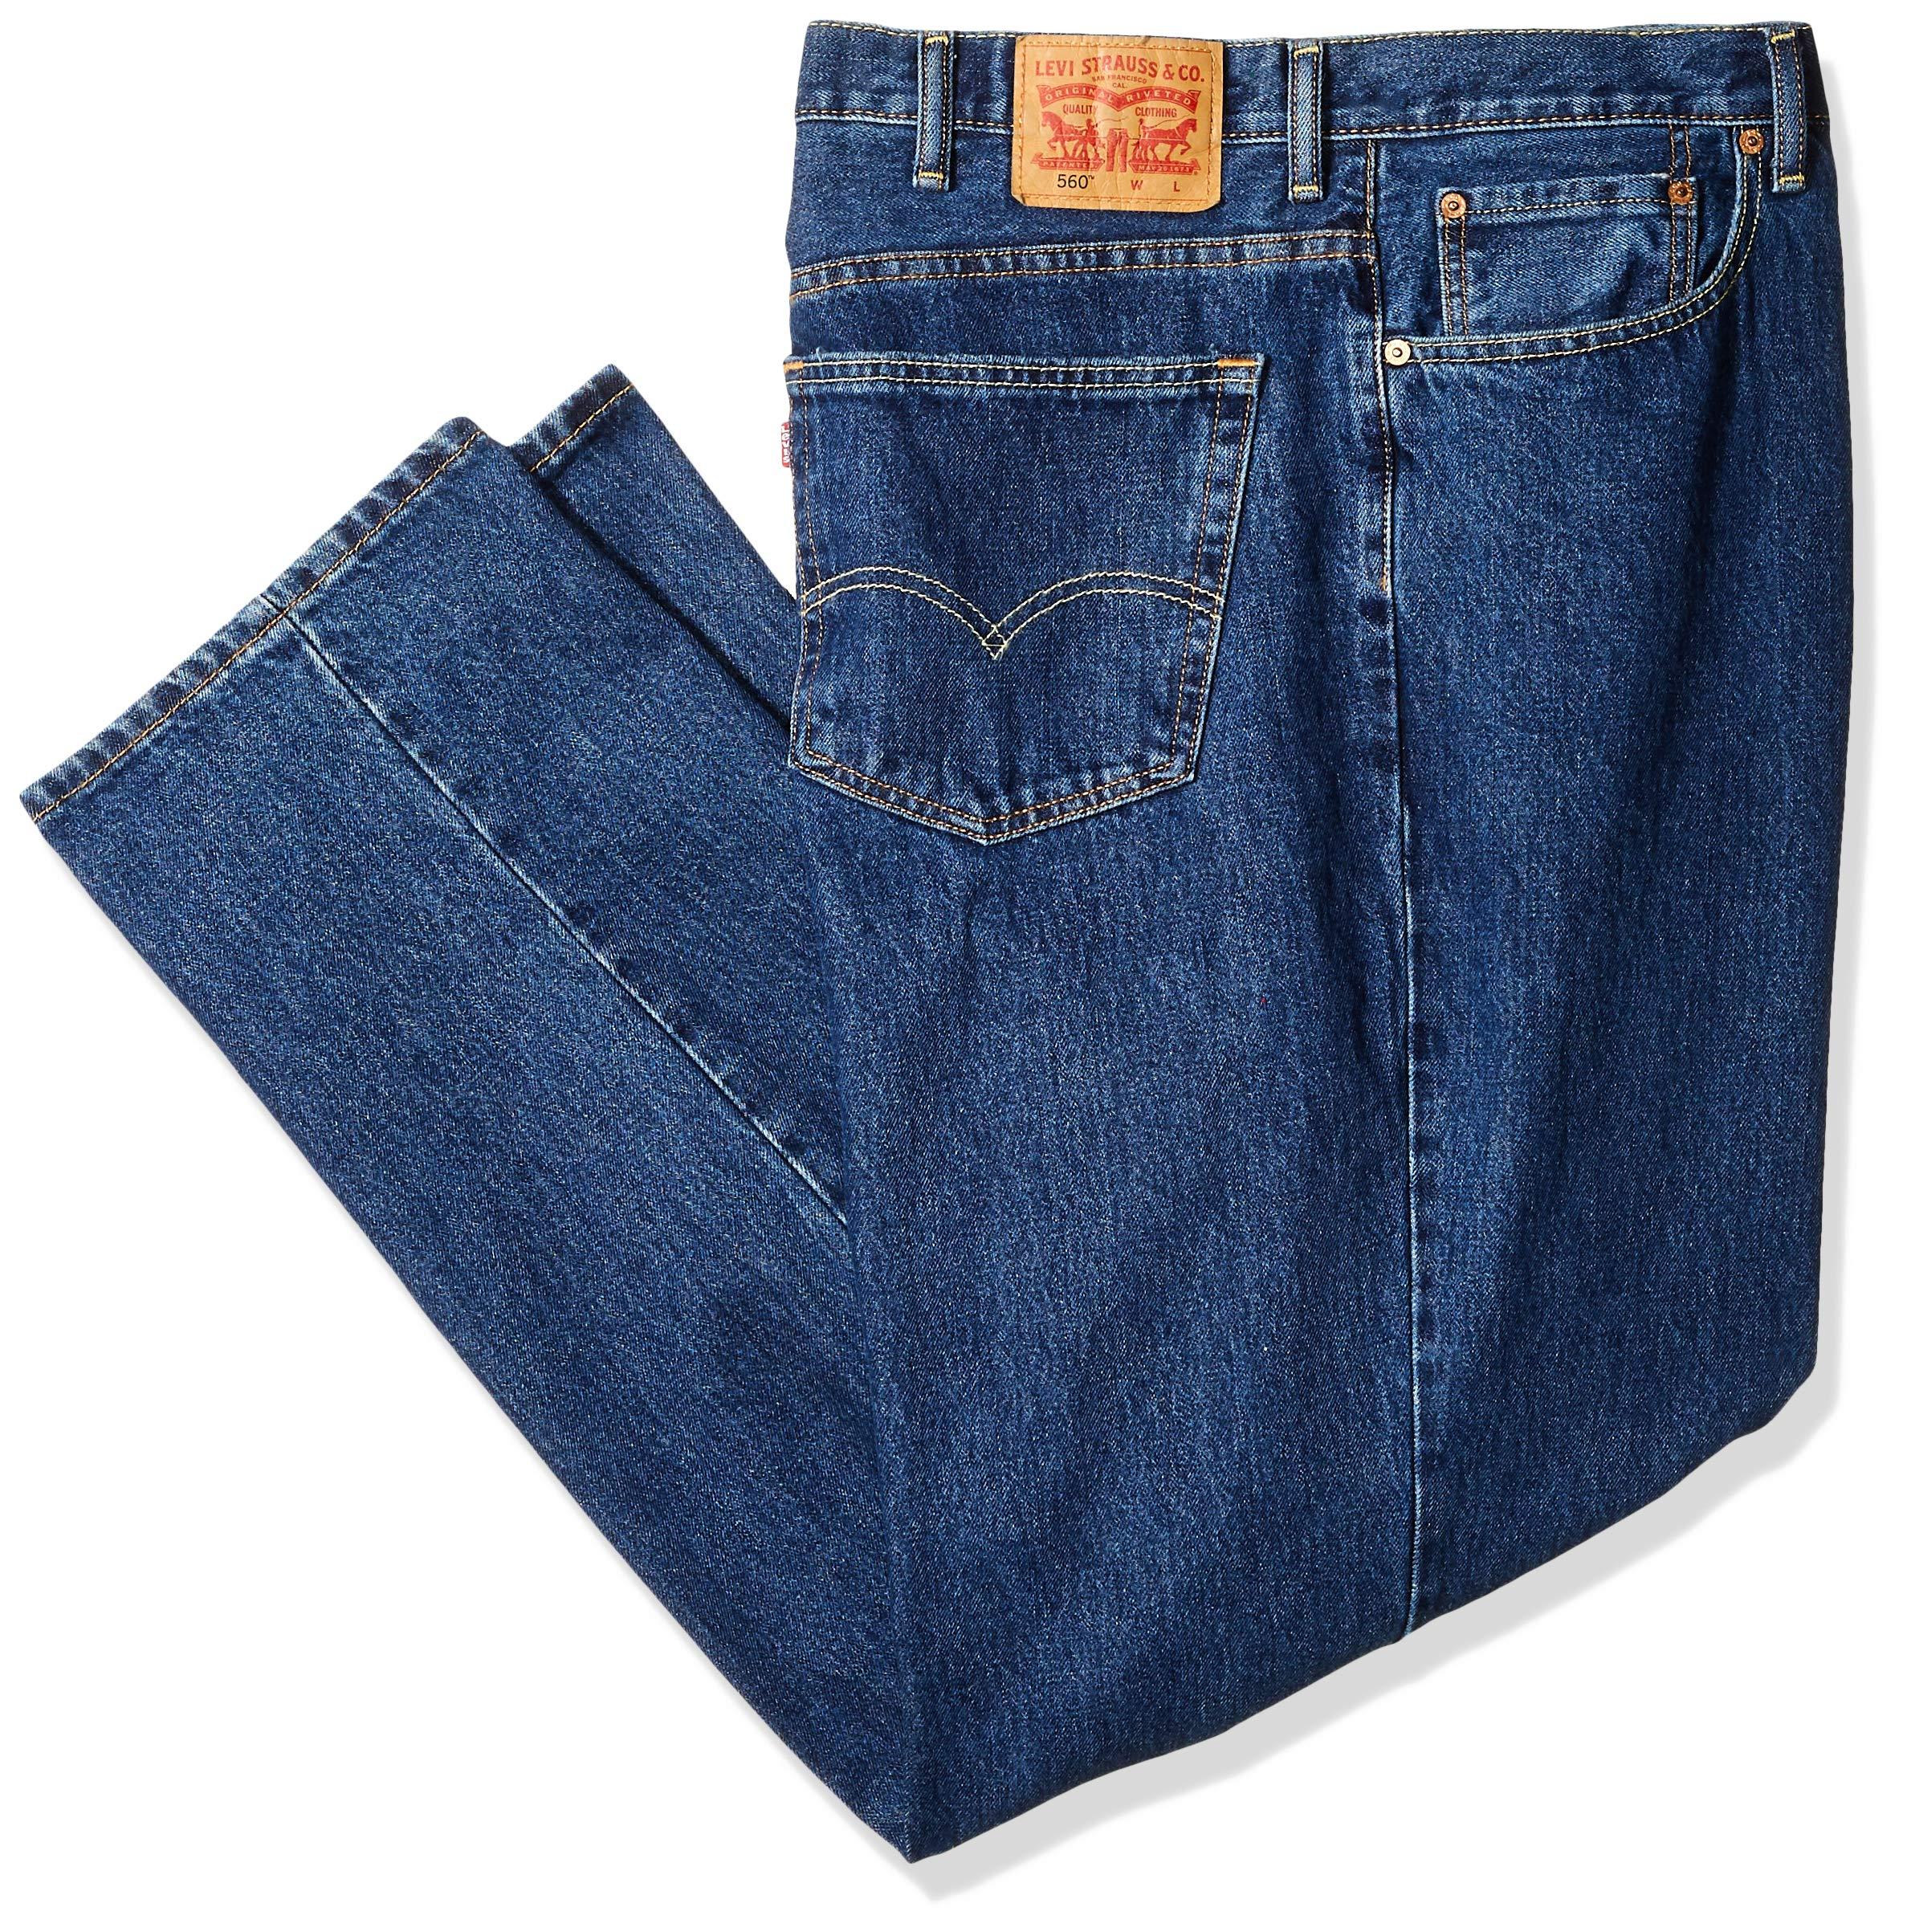 Actualizar 41+ imagen 560 levi's jeans - Abzlocal.mx